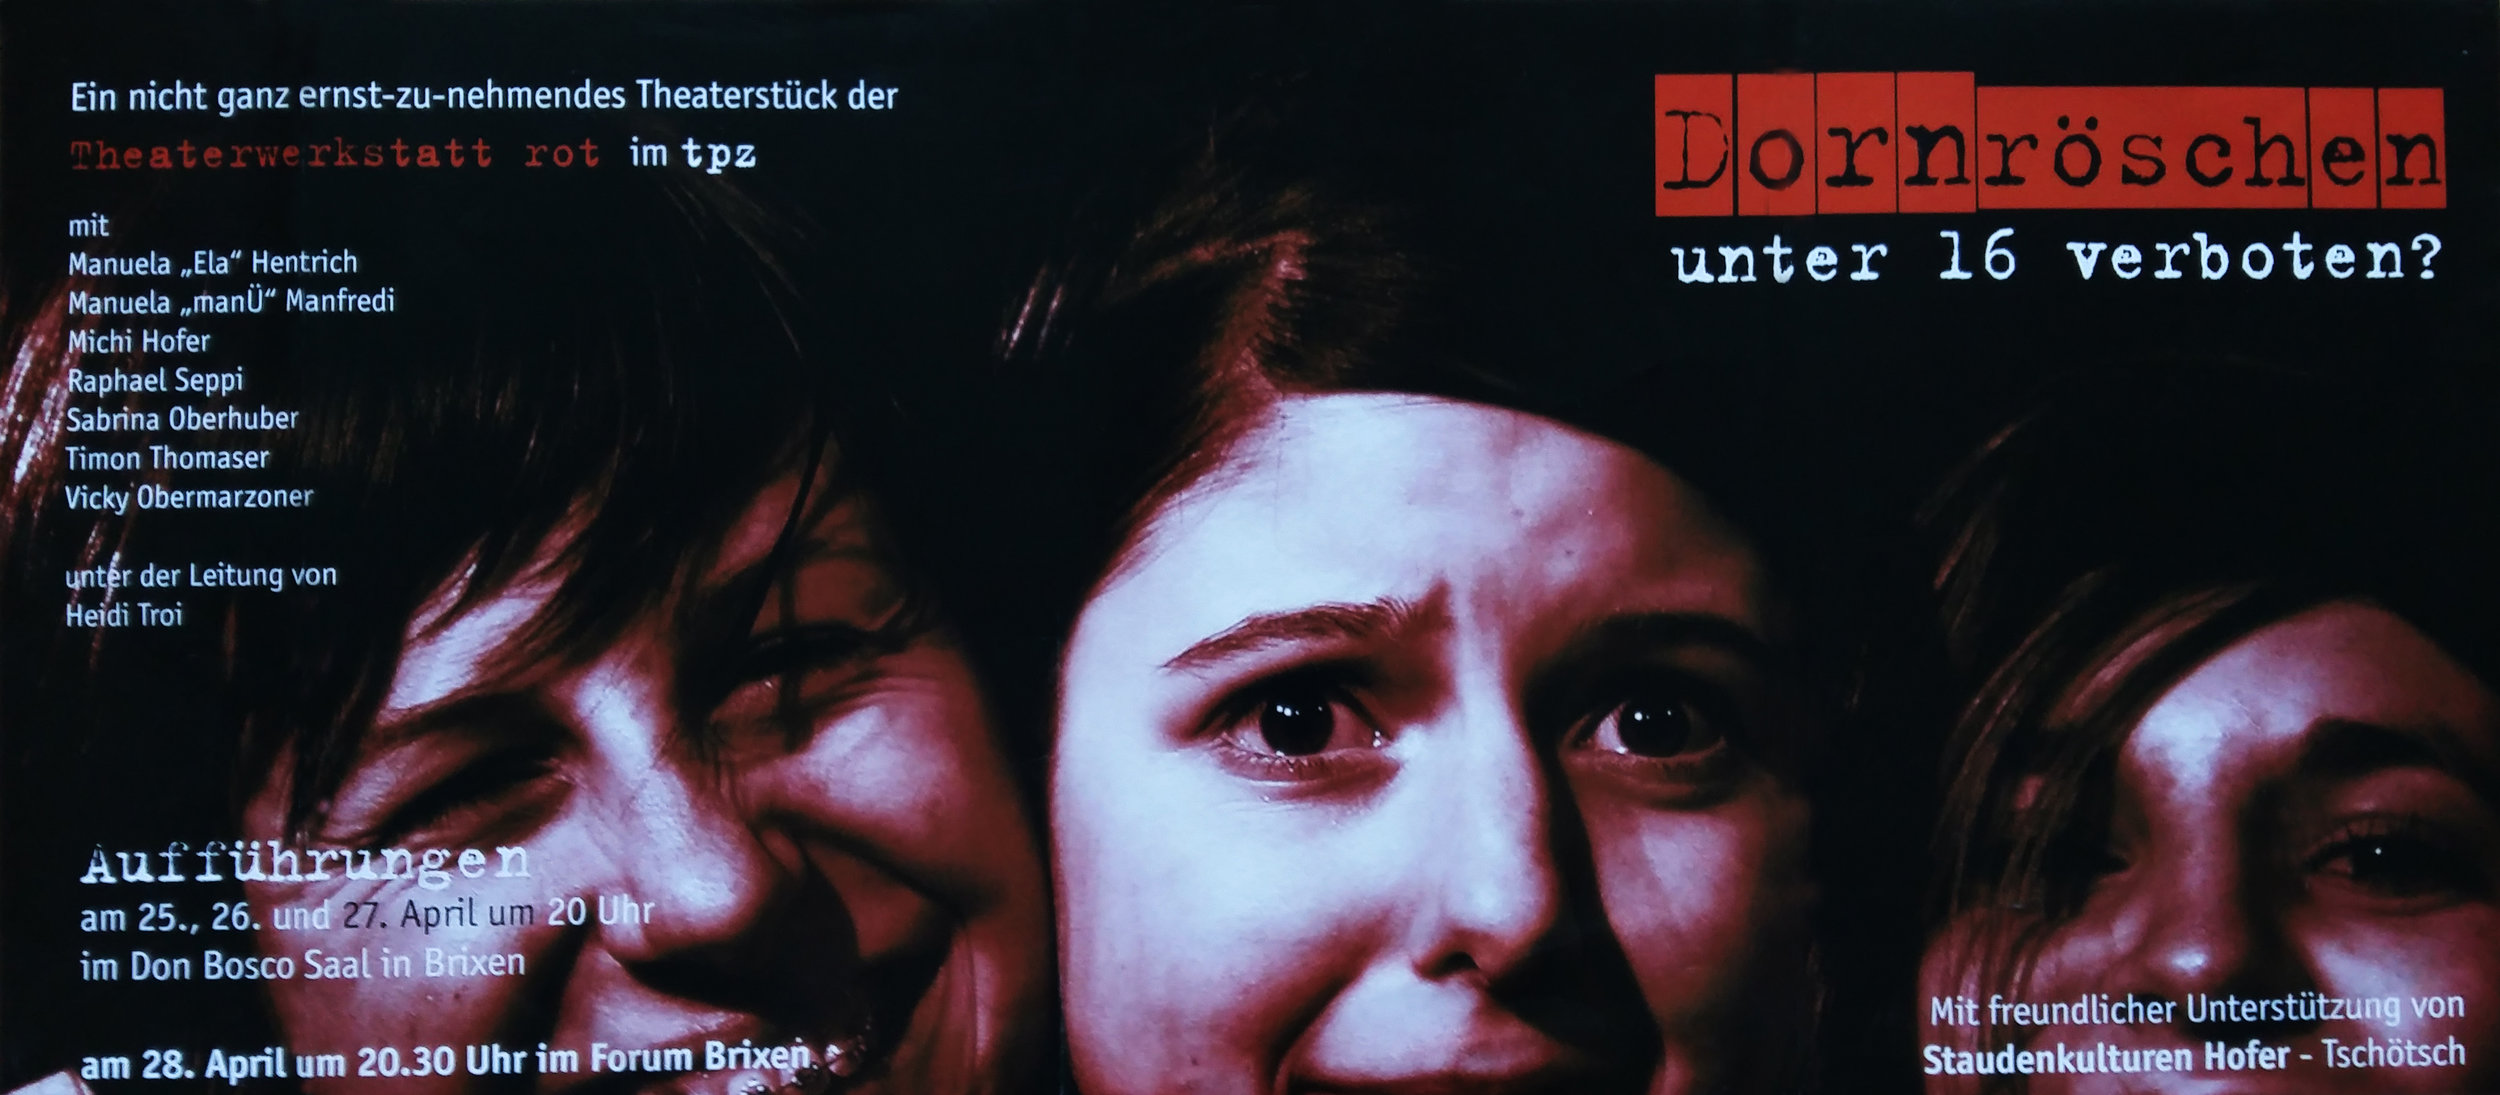 2004 rot Dornröschen unter 16 verboten Plakat.jpg